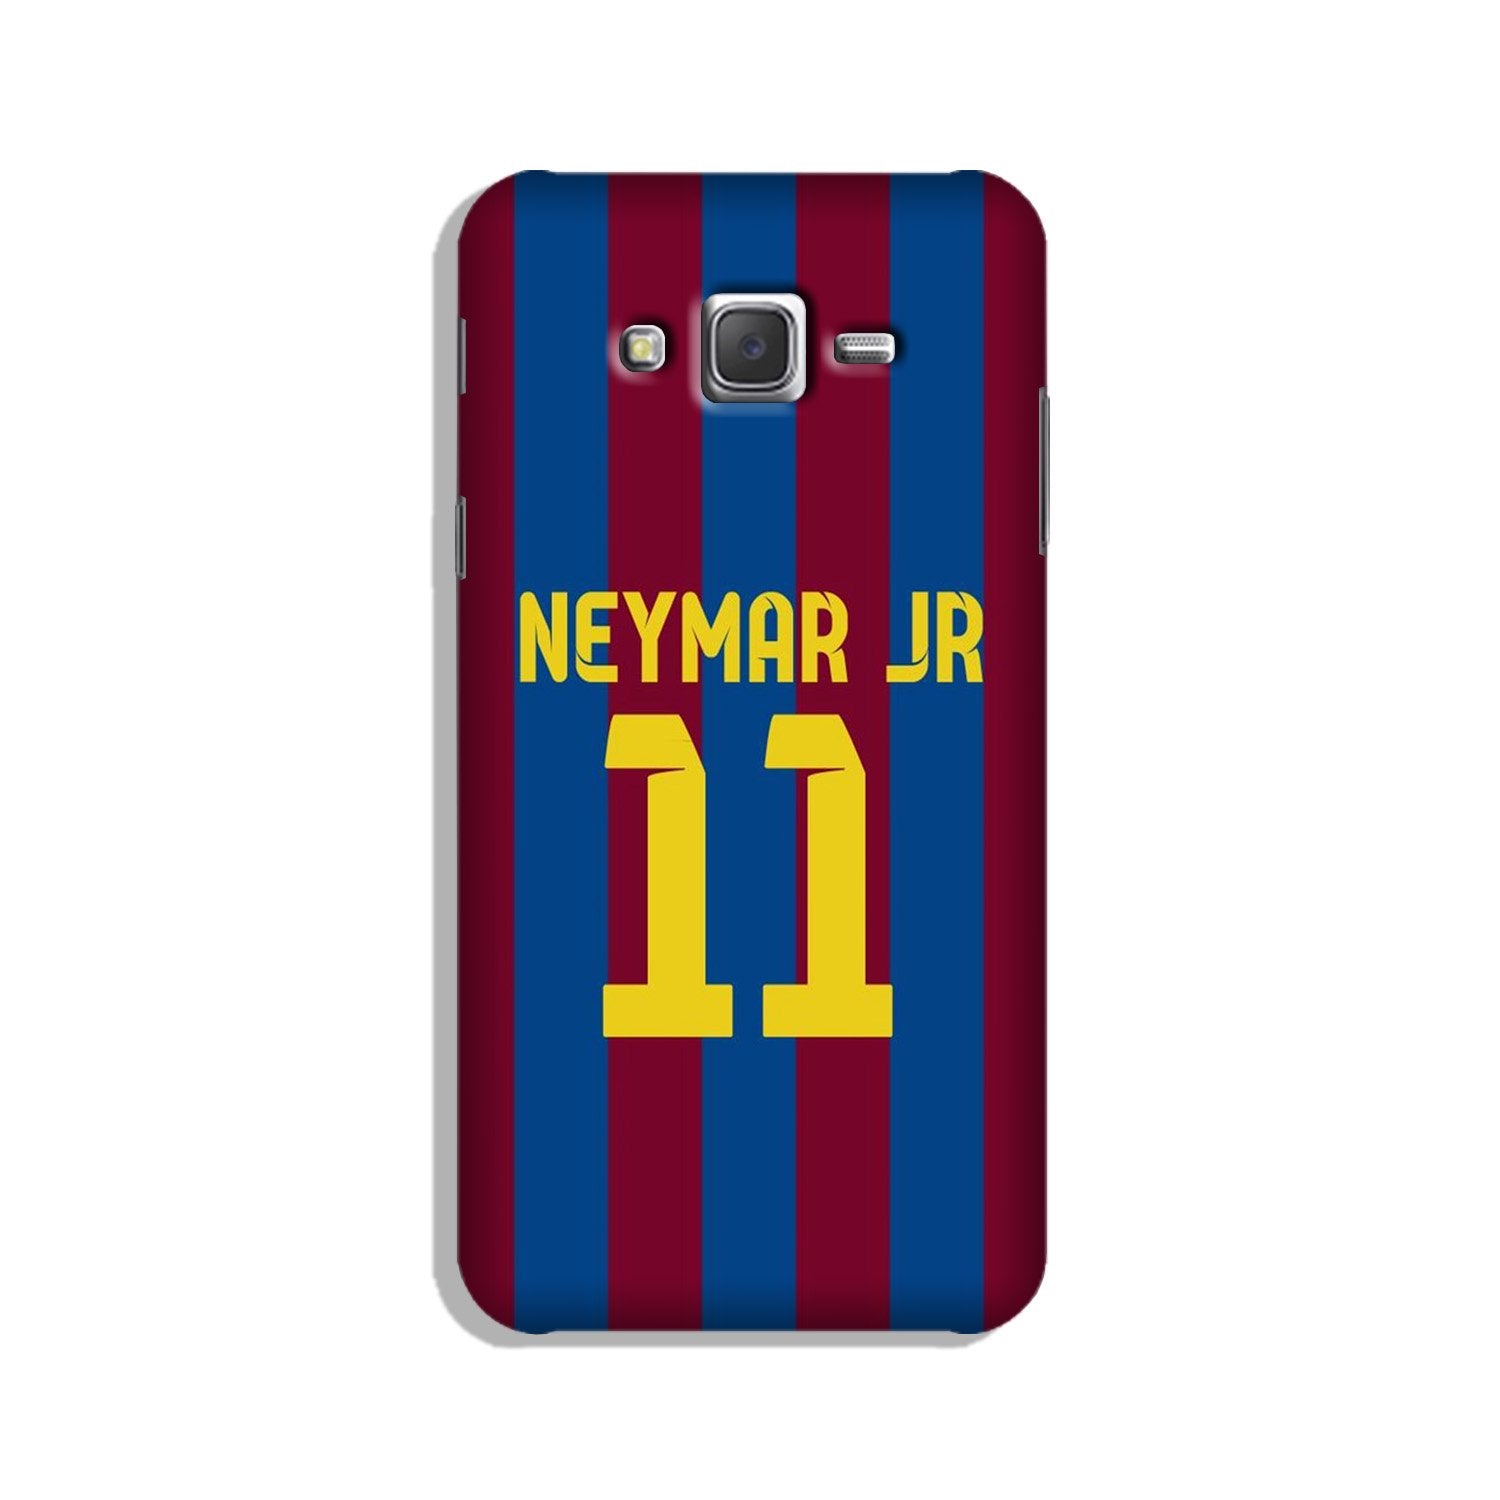 Neymar Jr Case for Galaxy J7 (2015)  (Design - 162)